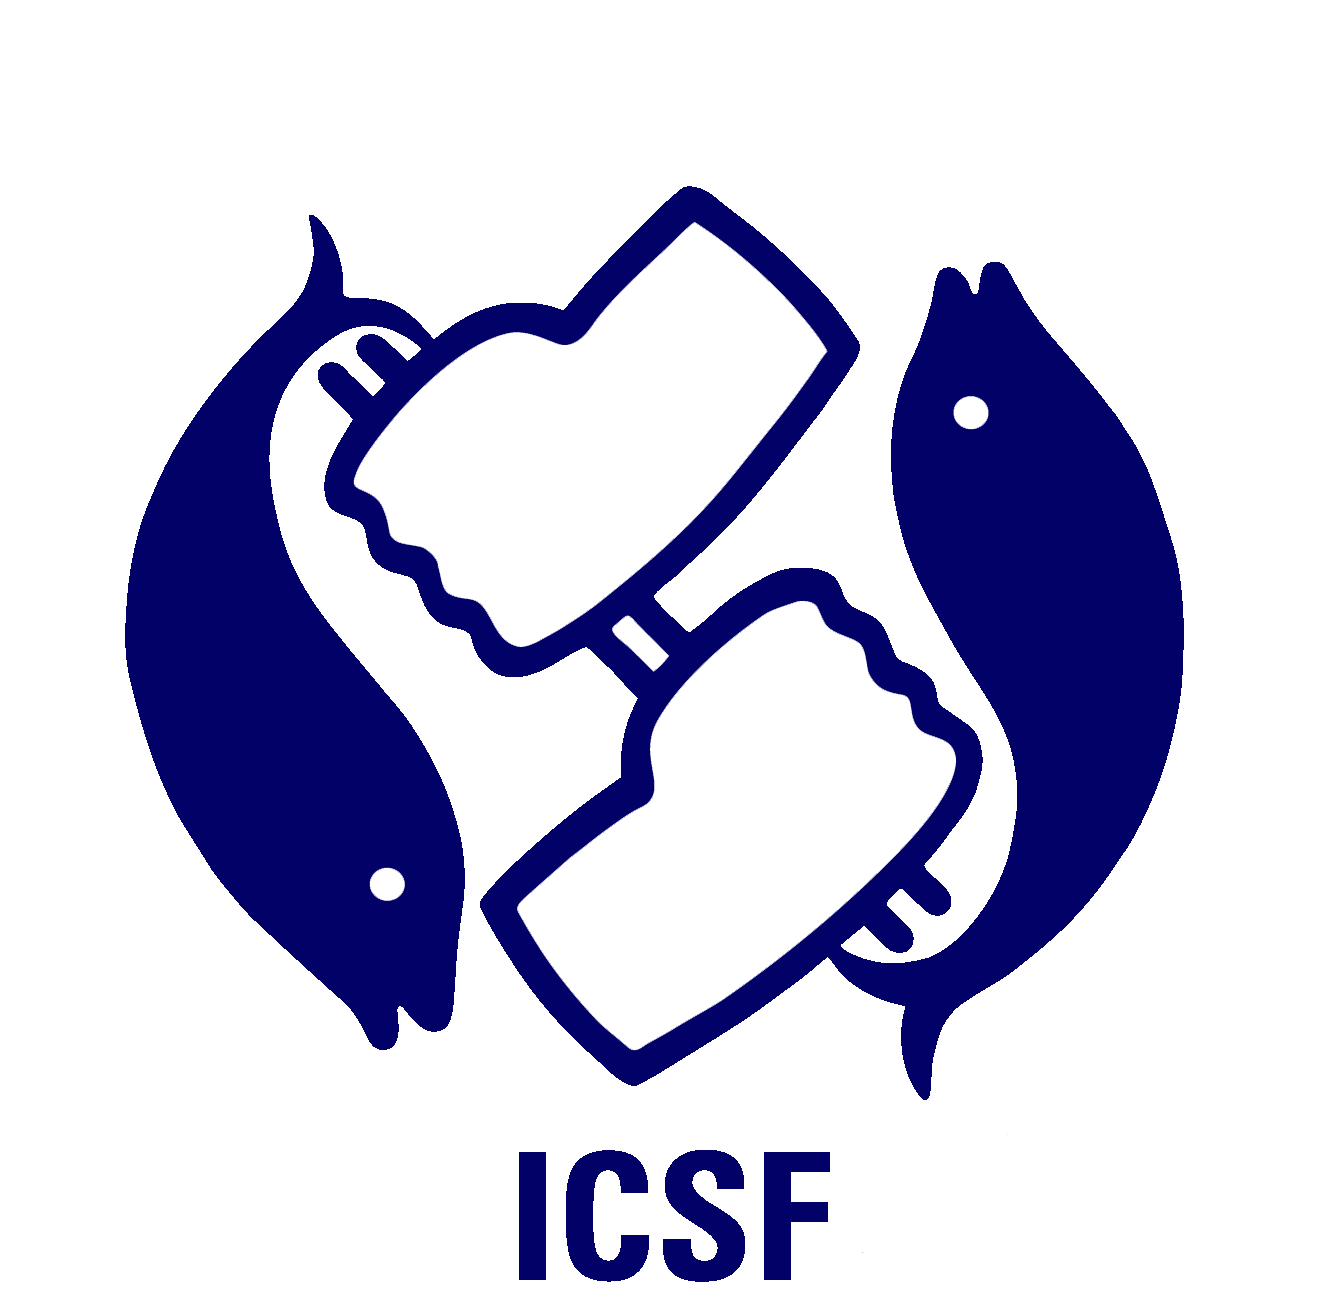 www.icsf.net